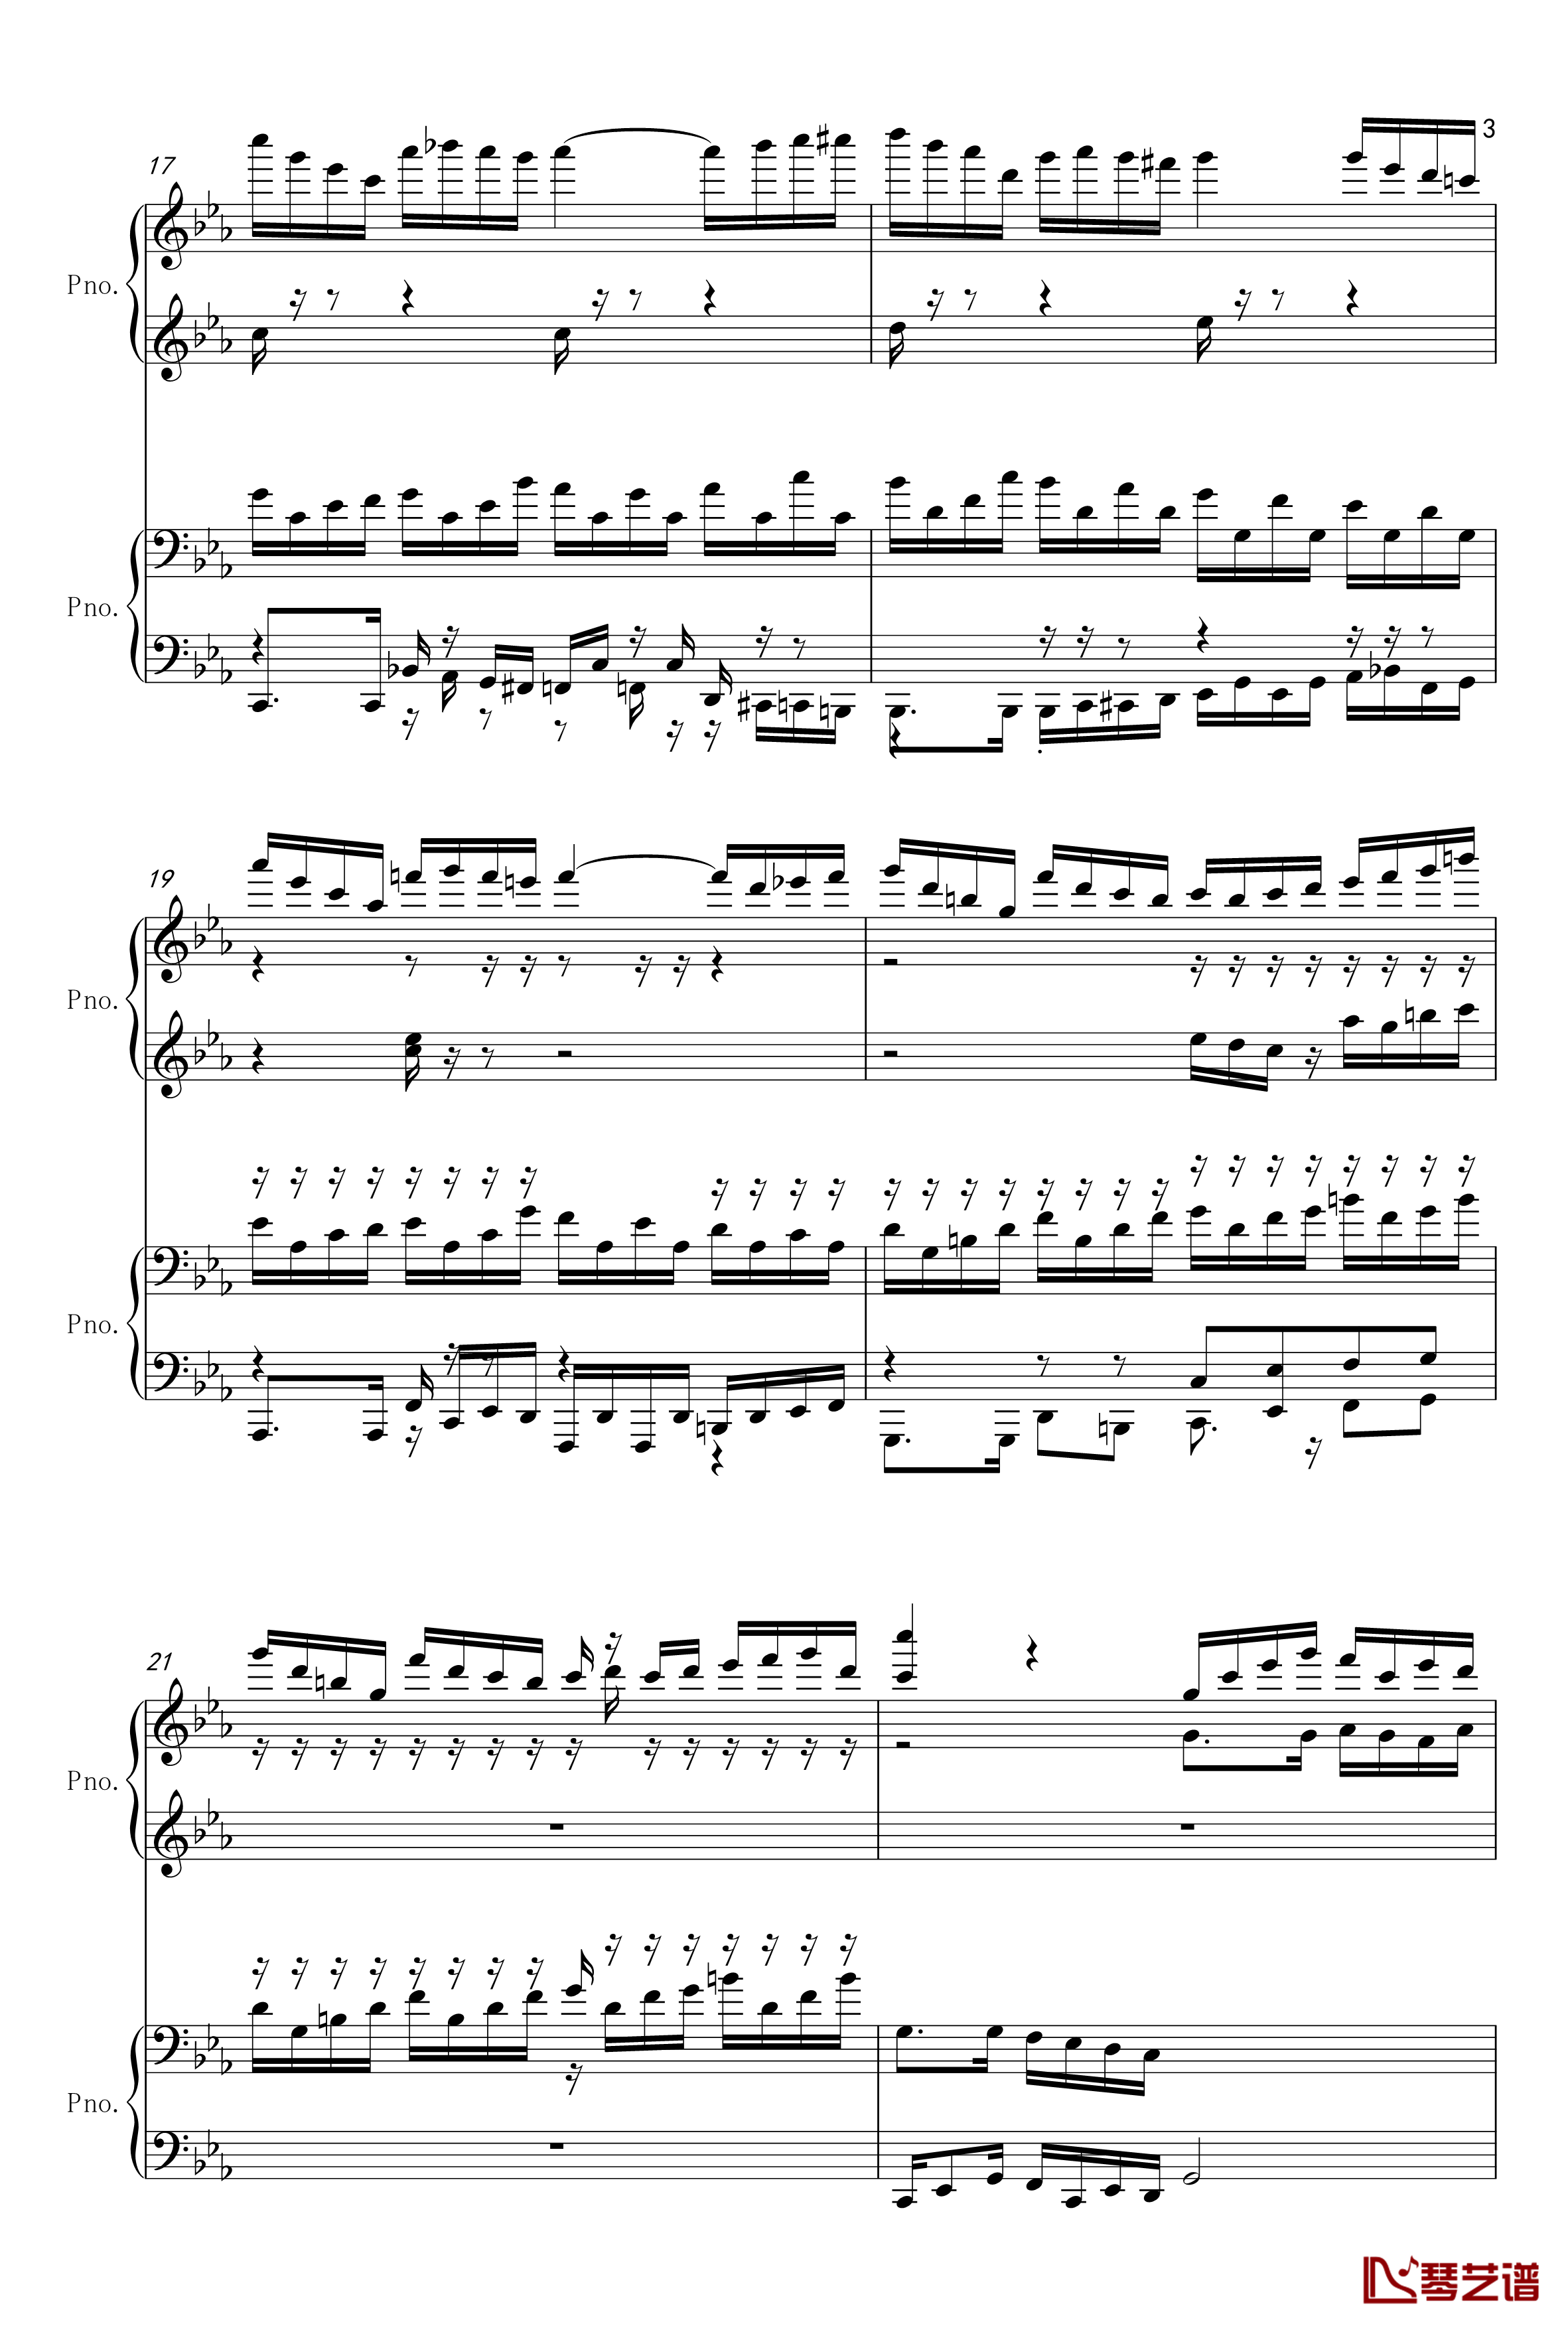 克罗地亚狂想曲-四手联弹钢琴谱-单钢琴-马克西姆-Maksim·Mrvica3